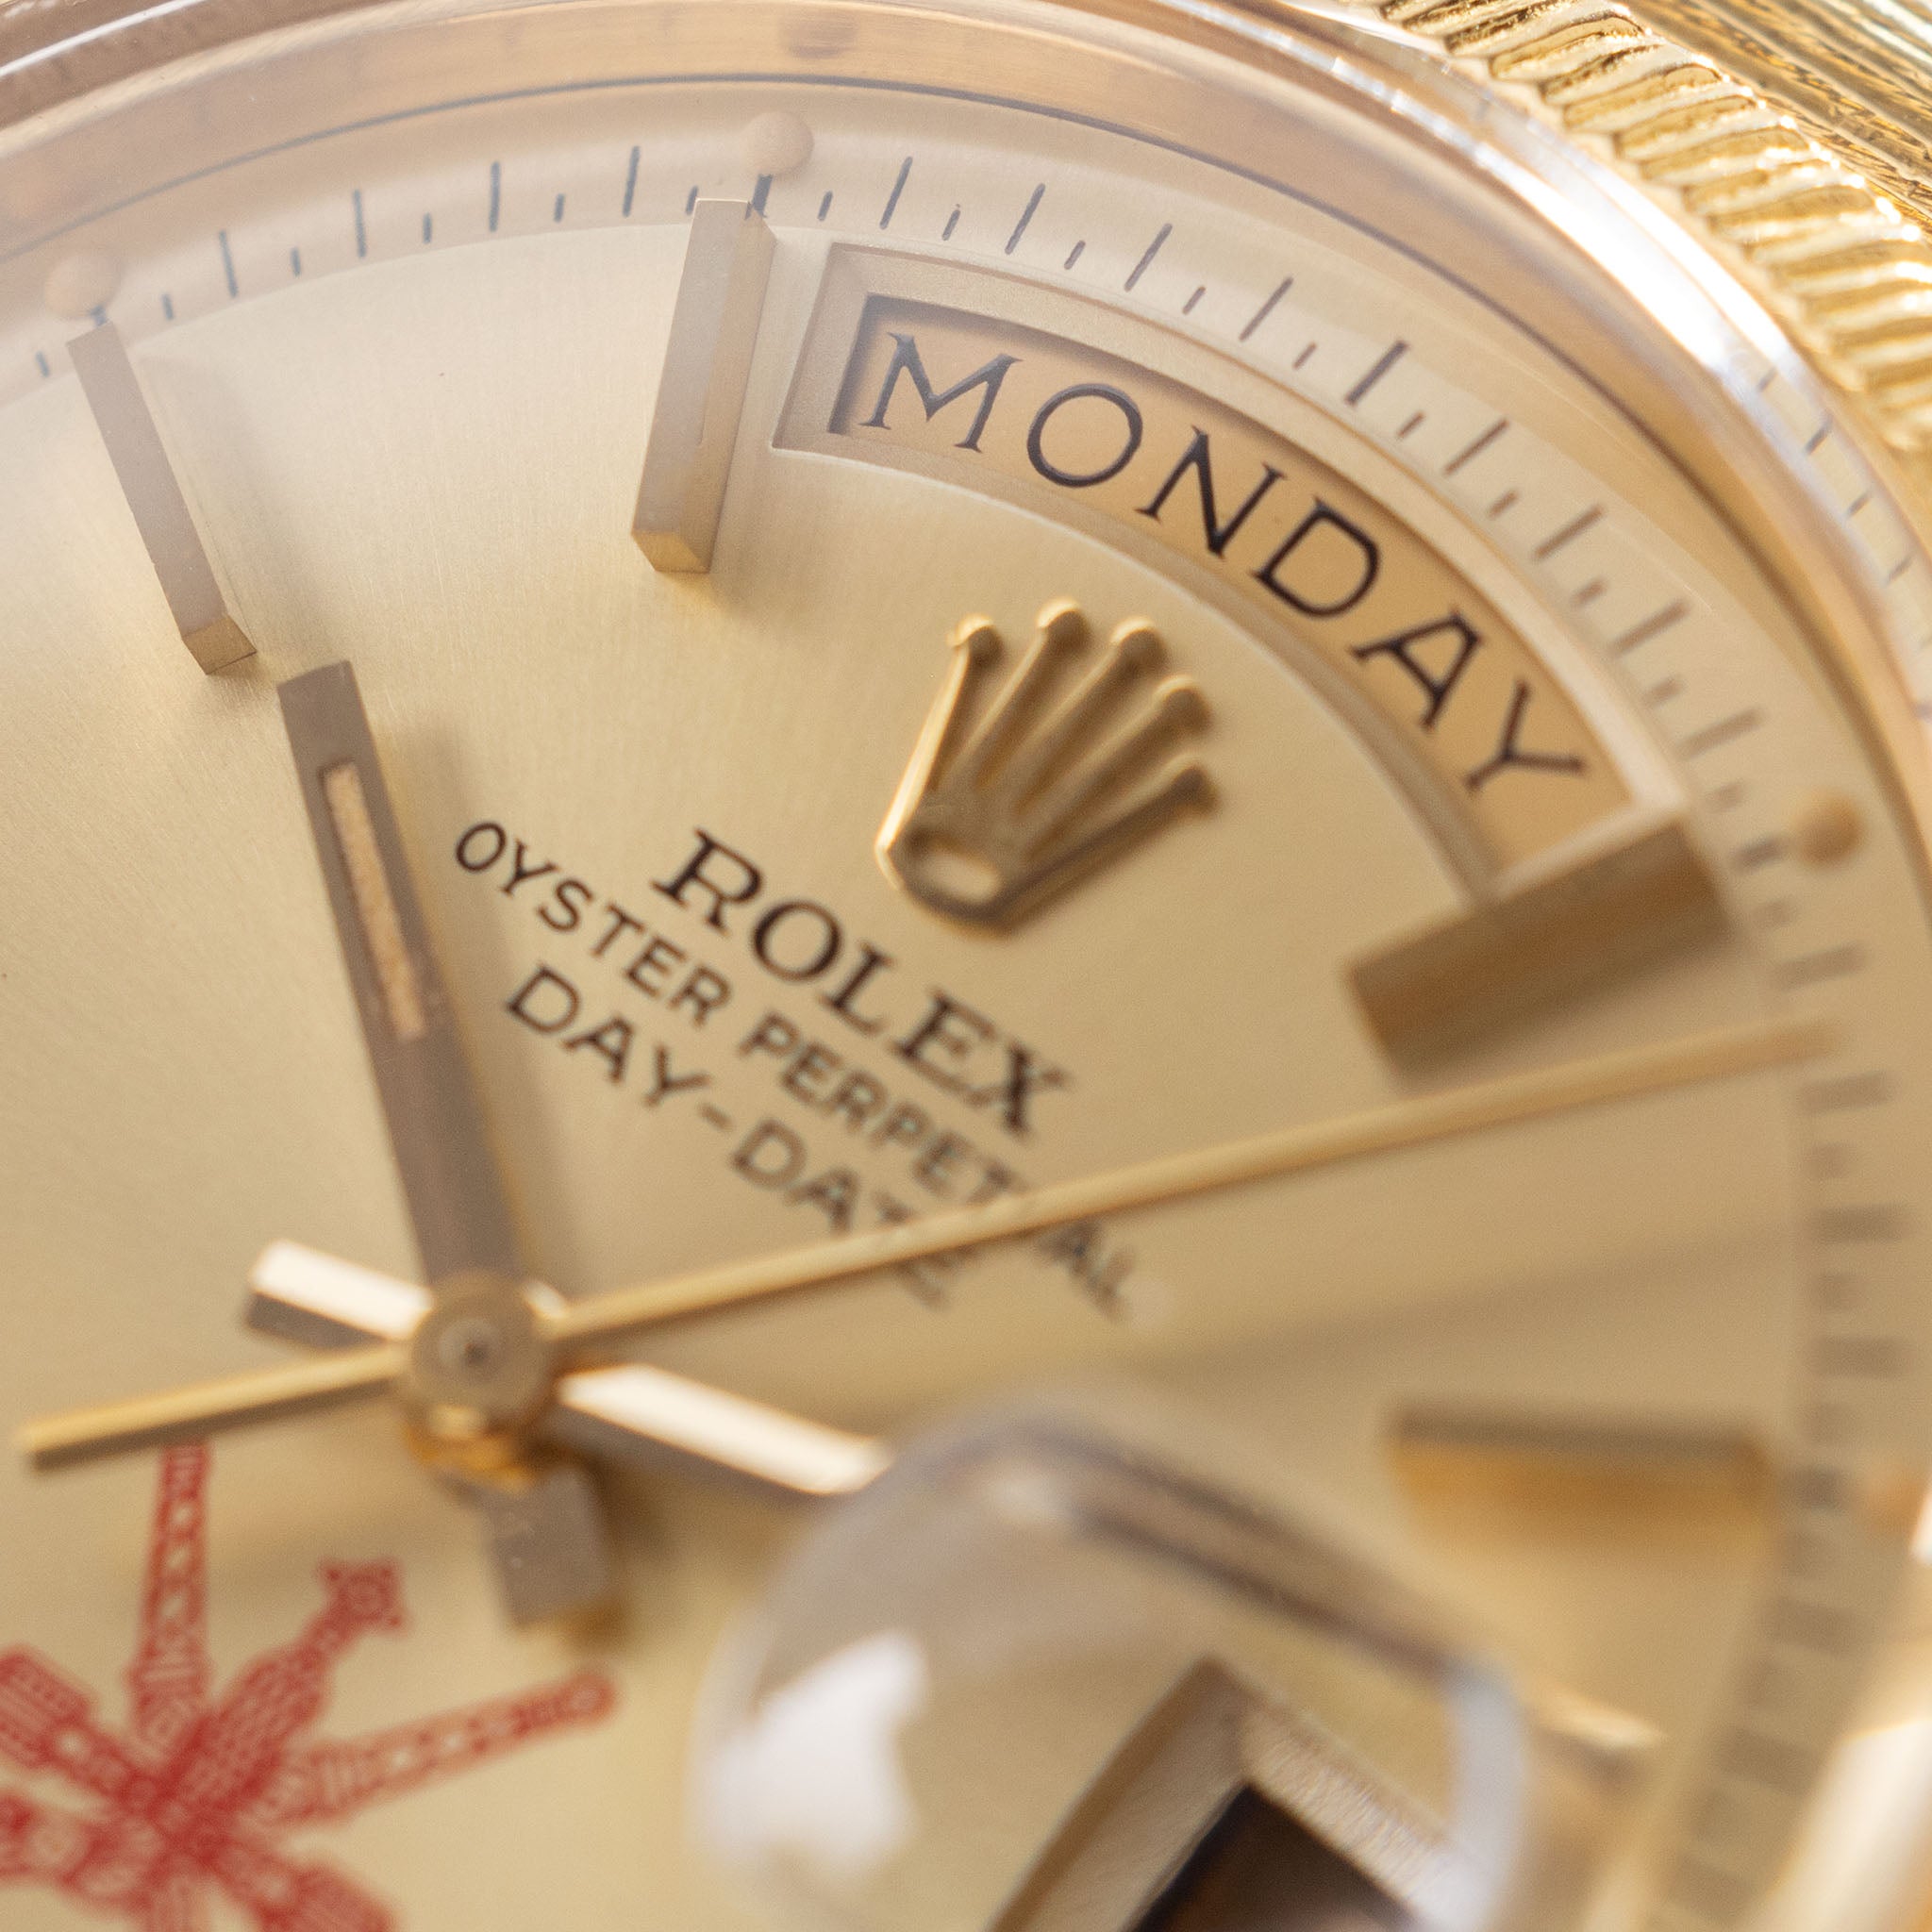 Rolex Day-Date 1807 Oman Khanjar Dial Retailed by Asprey “Bark”